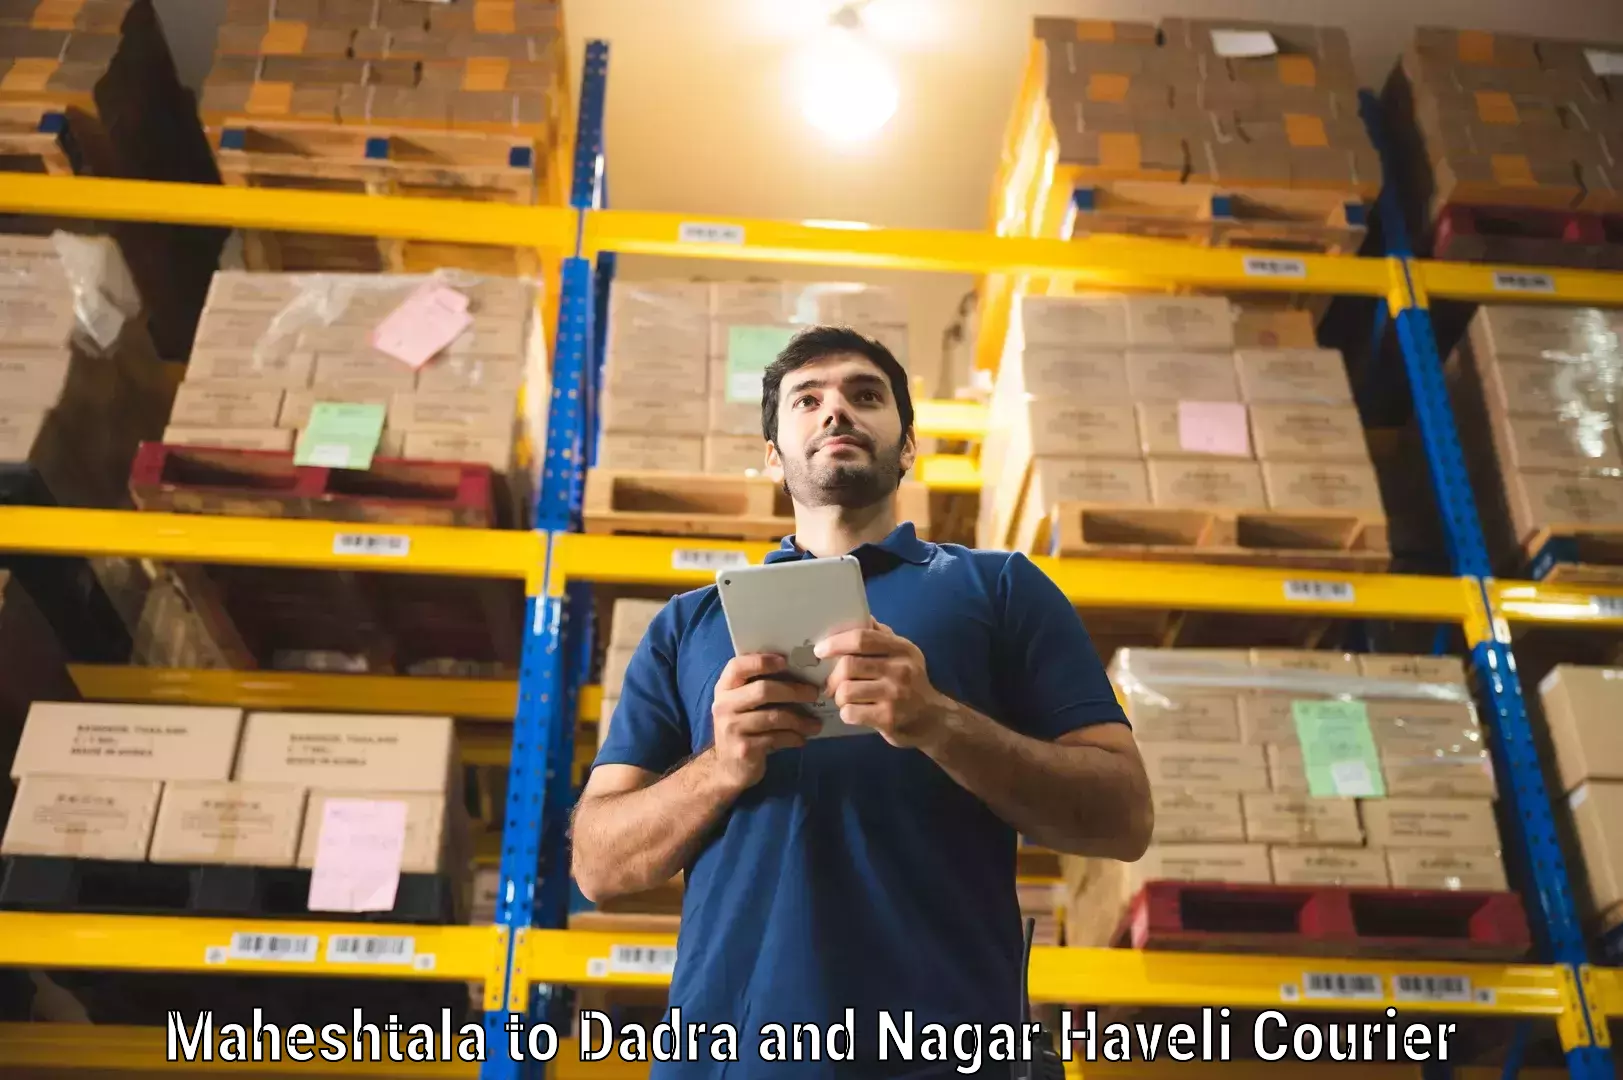 Quality courier partnerships Maheshtala to Silvassa